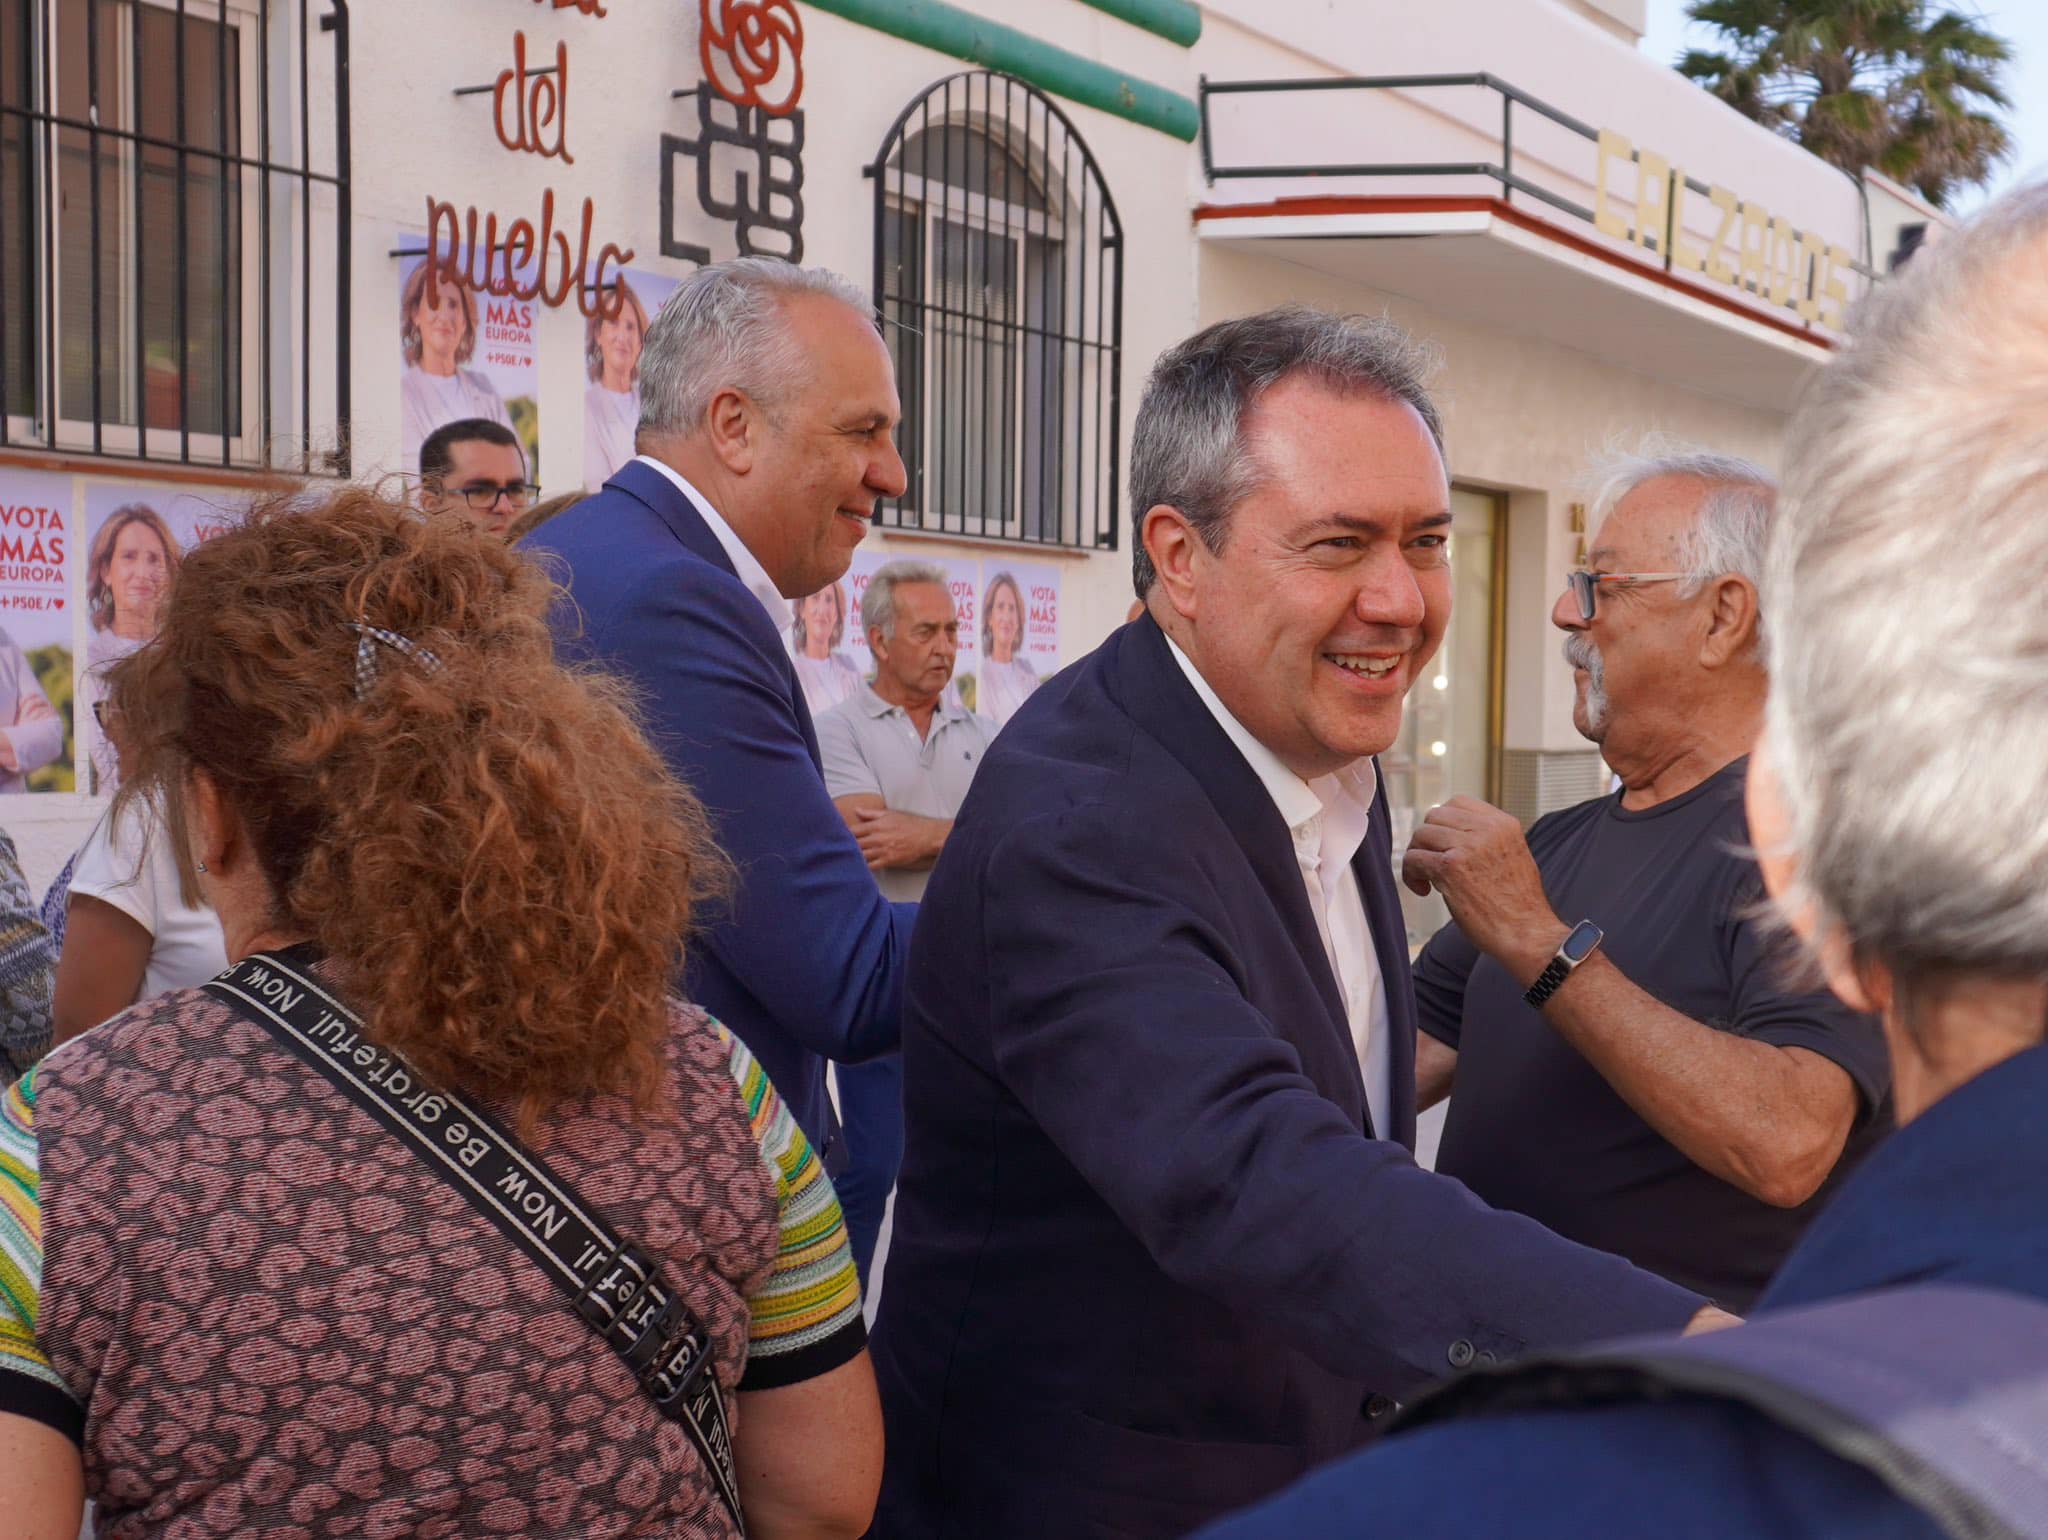 Juan Espadas saluda sonriendo durante la campaña europea